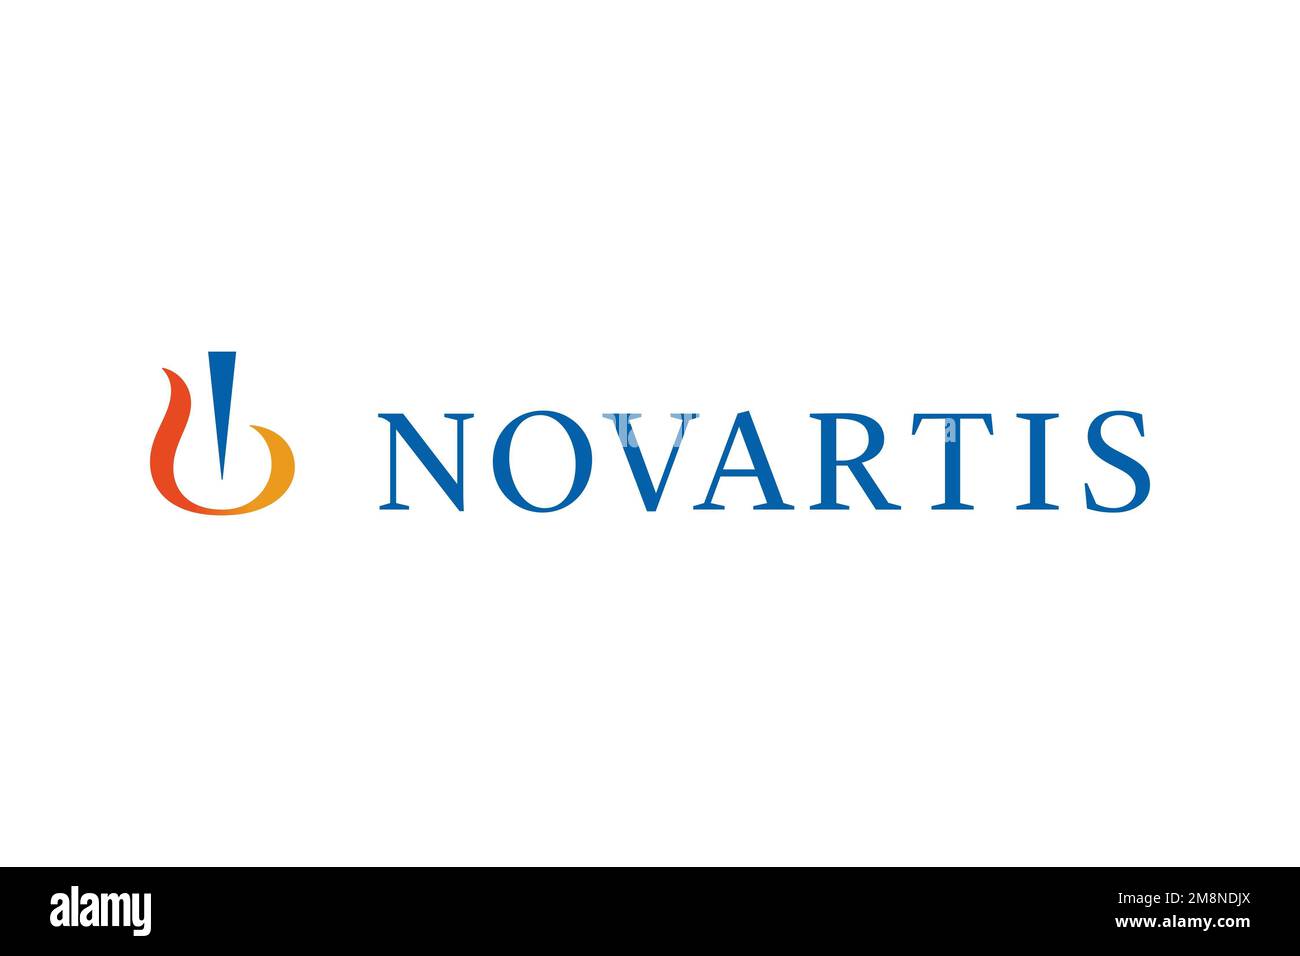 novartis logo high resolution